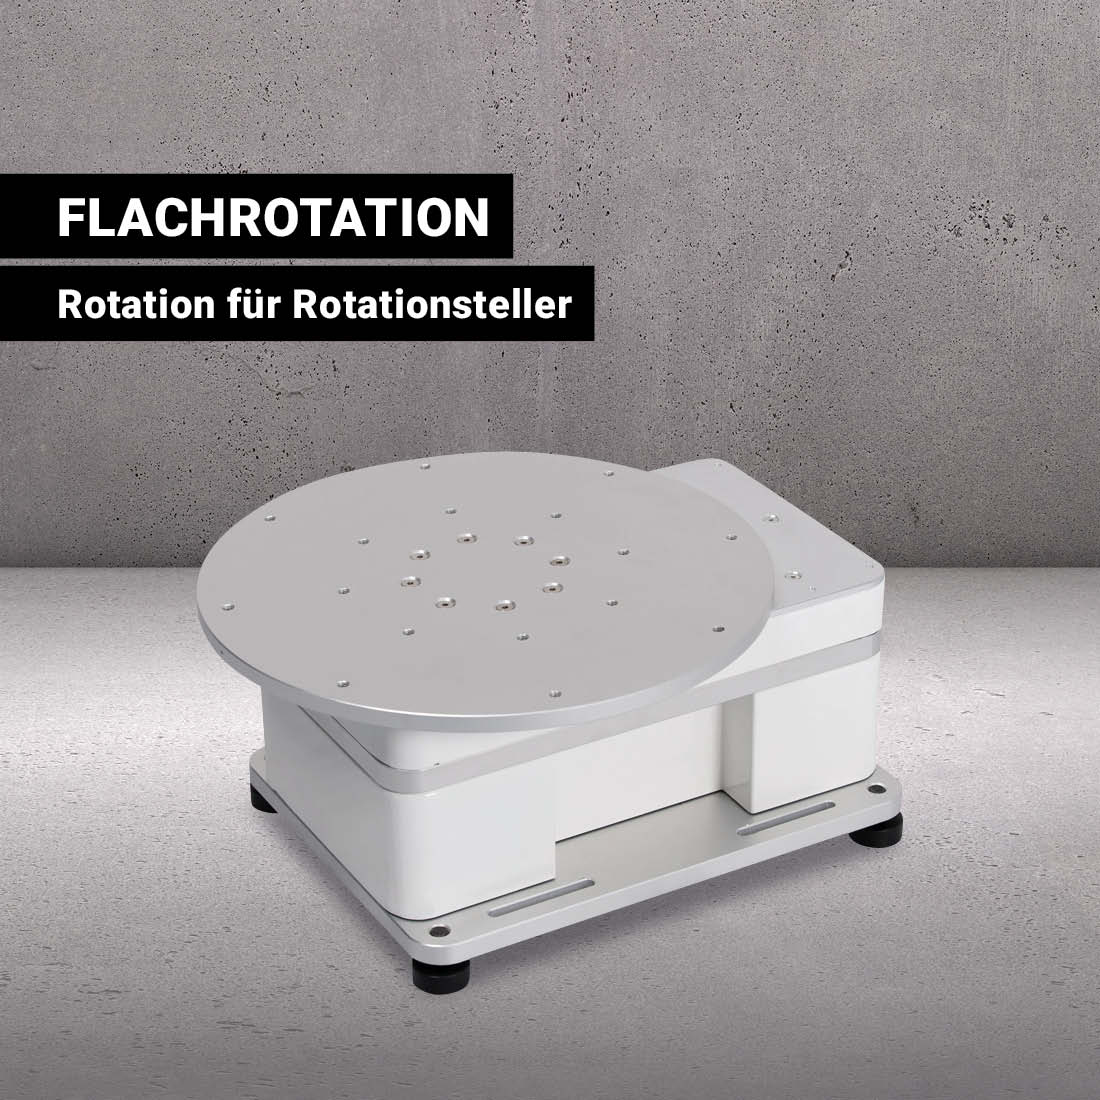 Flachrotation